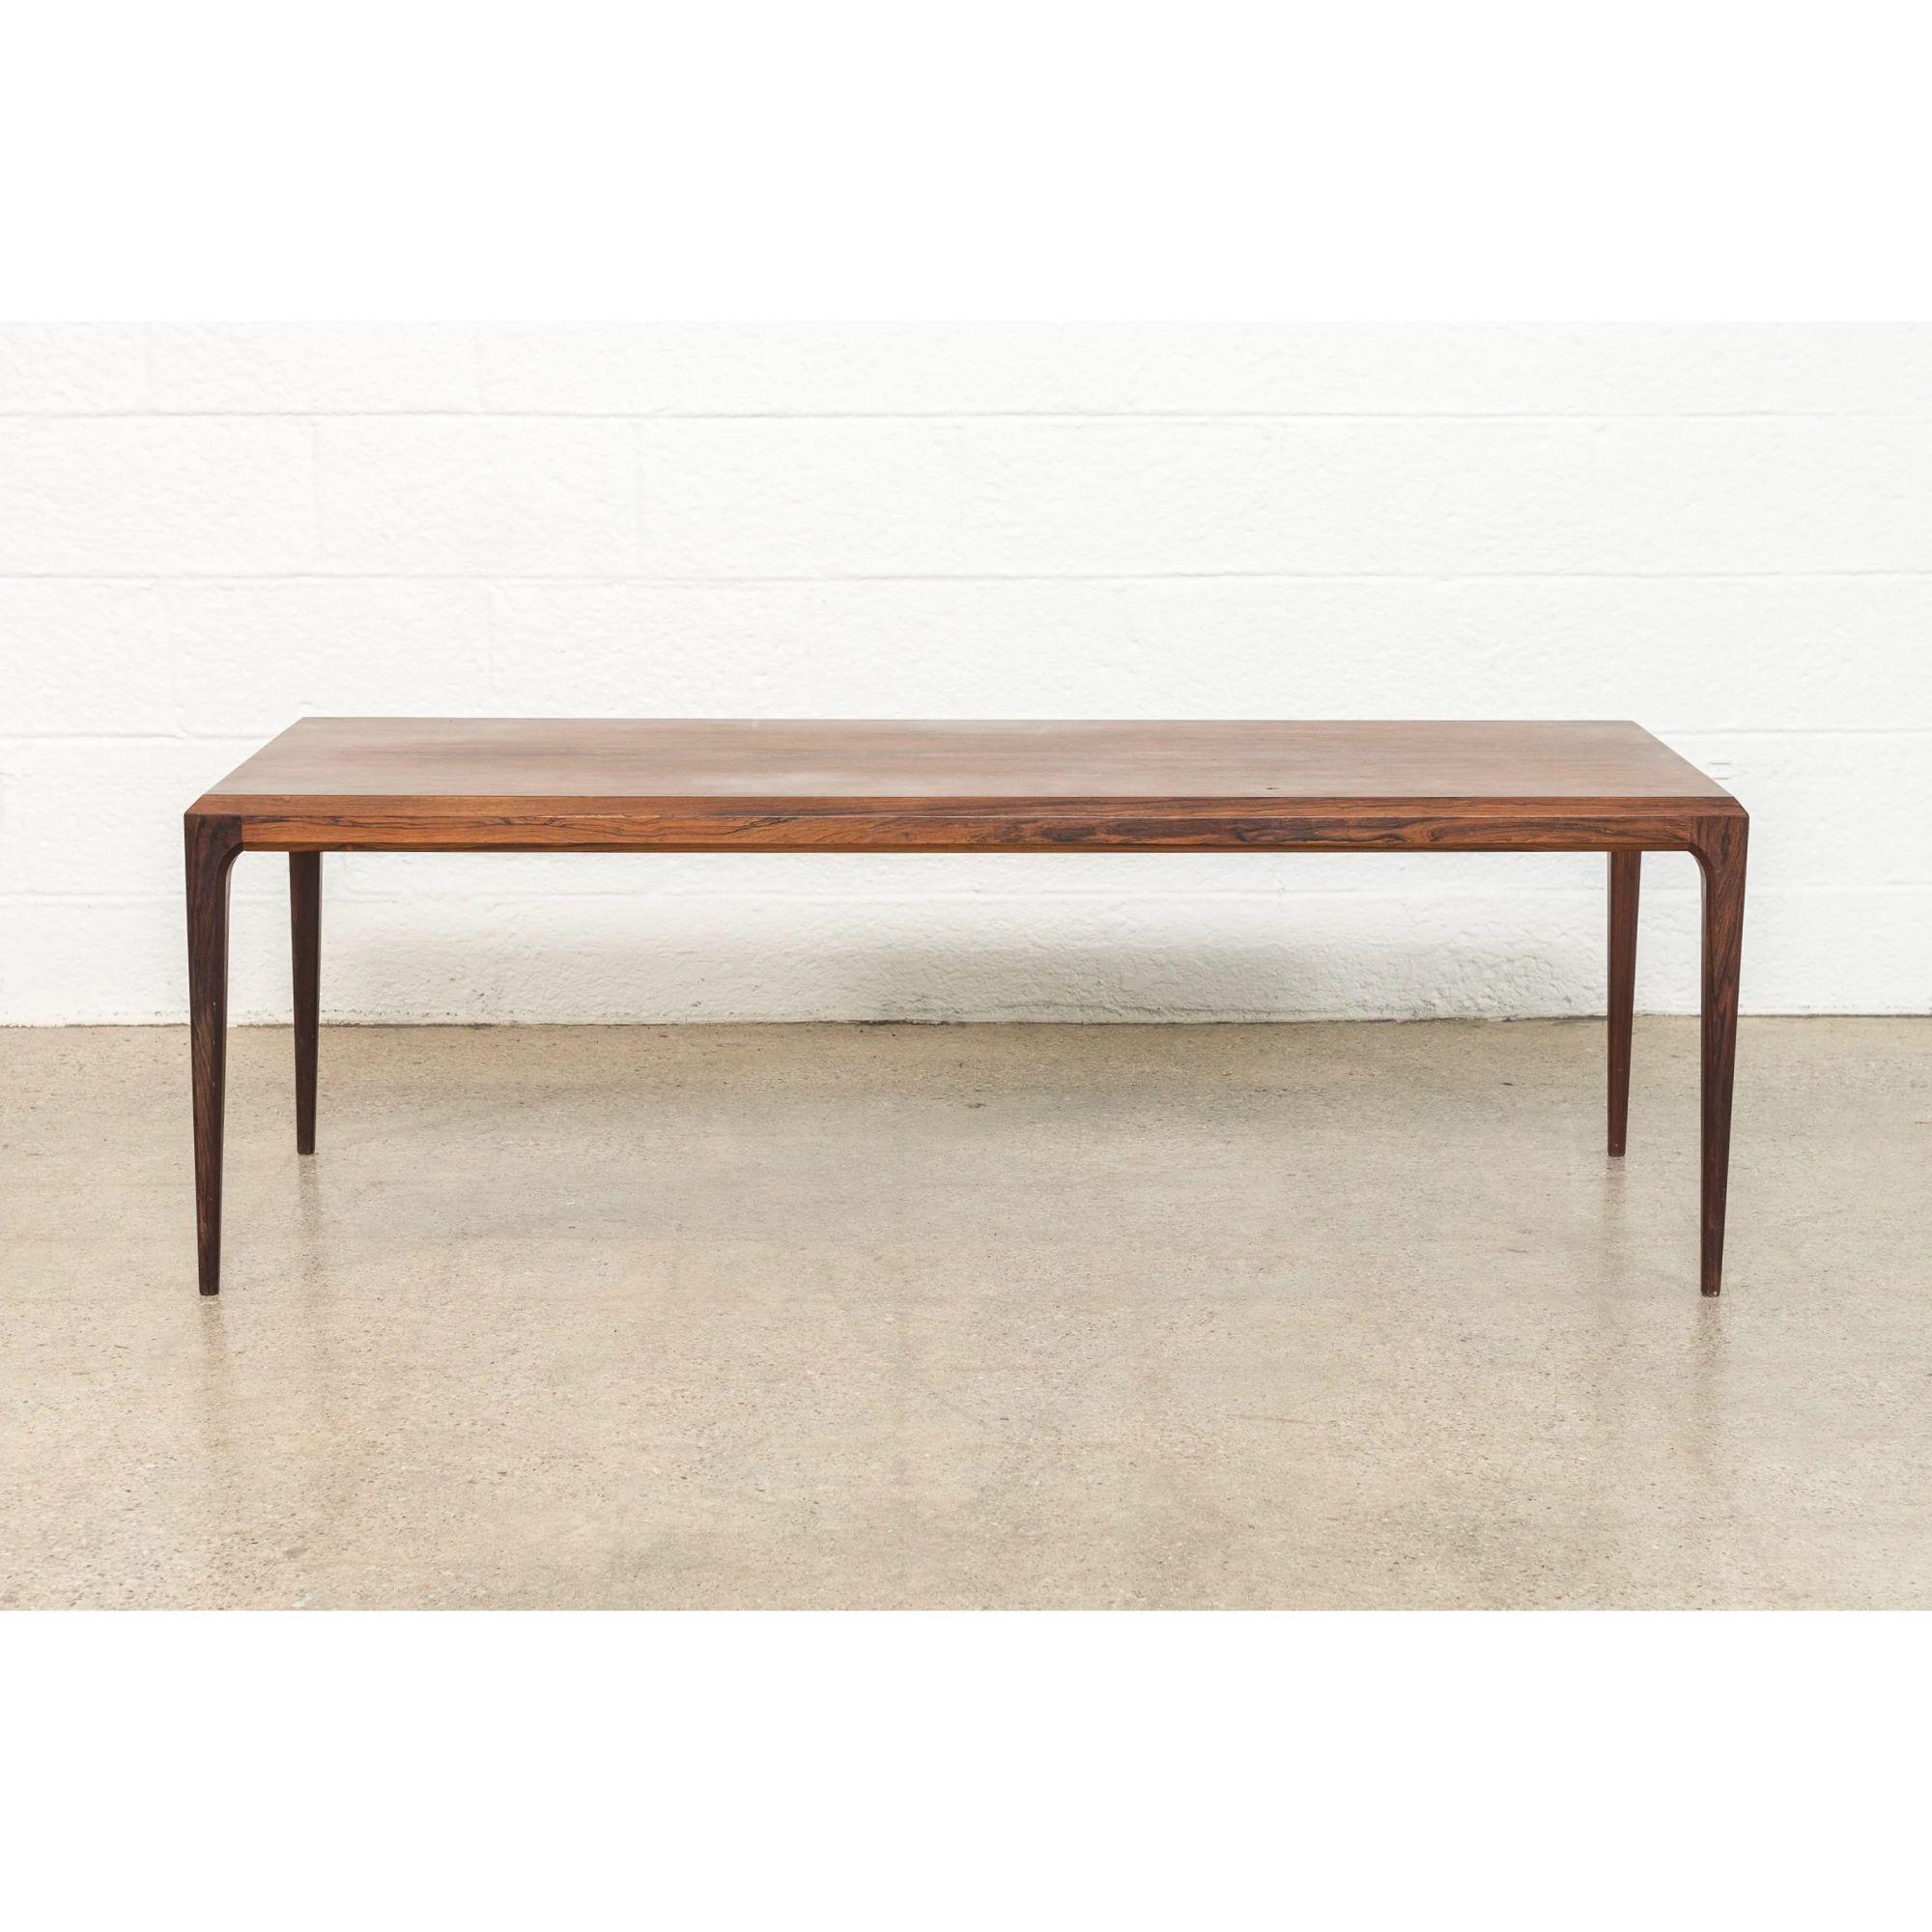 Cette exquise table basse danoise moderne en bois de rose a été conçue par Johannes Andersen pour CFC Silkeborg et fabriquée au Danemark vers 1960. Le design minimaliste classique présente des lignes pures et élégantes et la table est fabriquée de